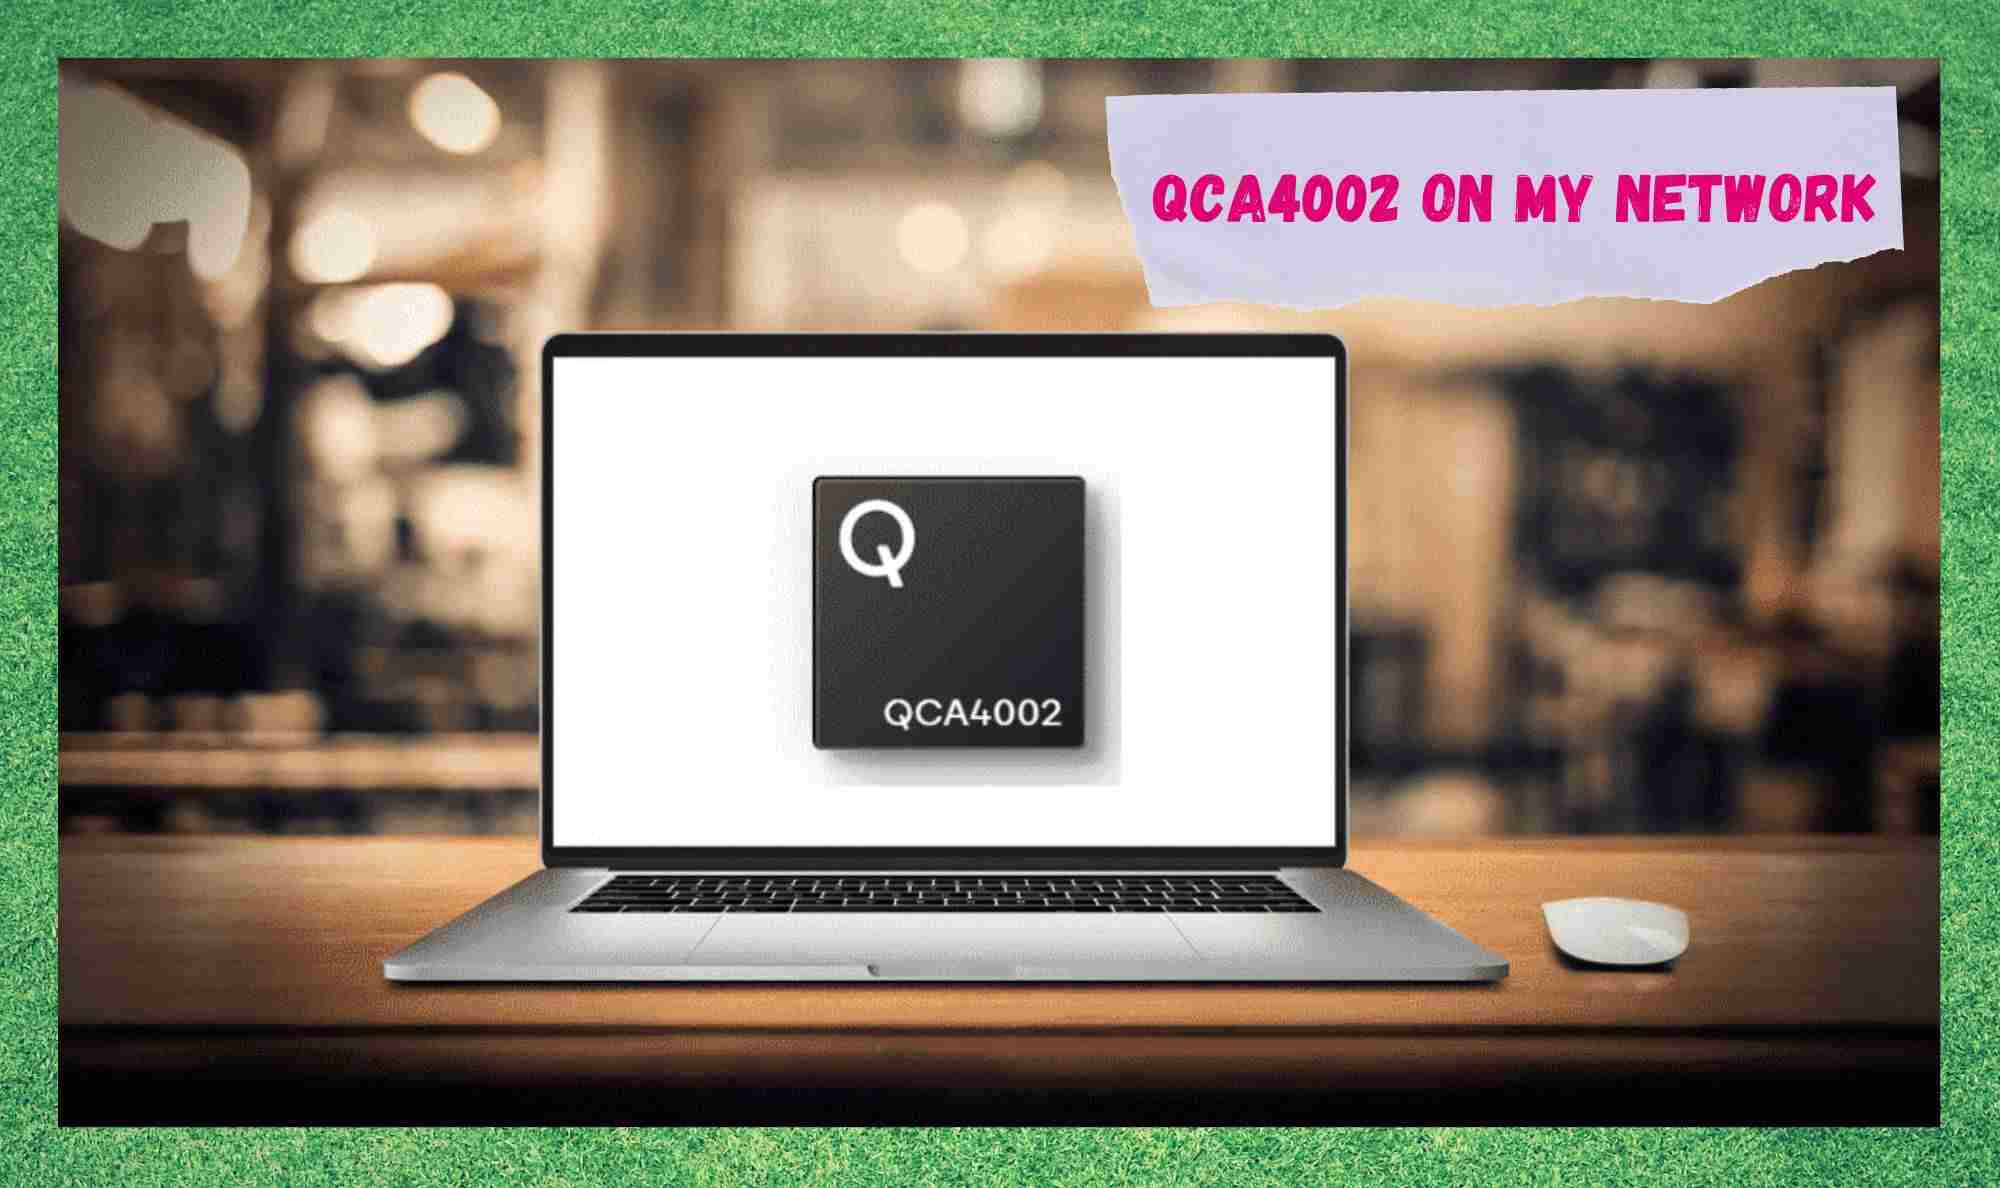 Waarom zie ik QCA4002 op mijn netwerk?